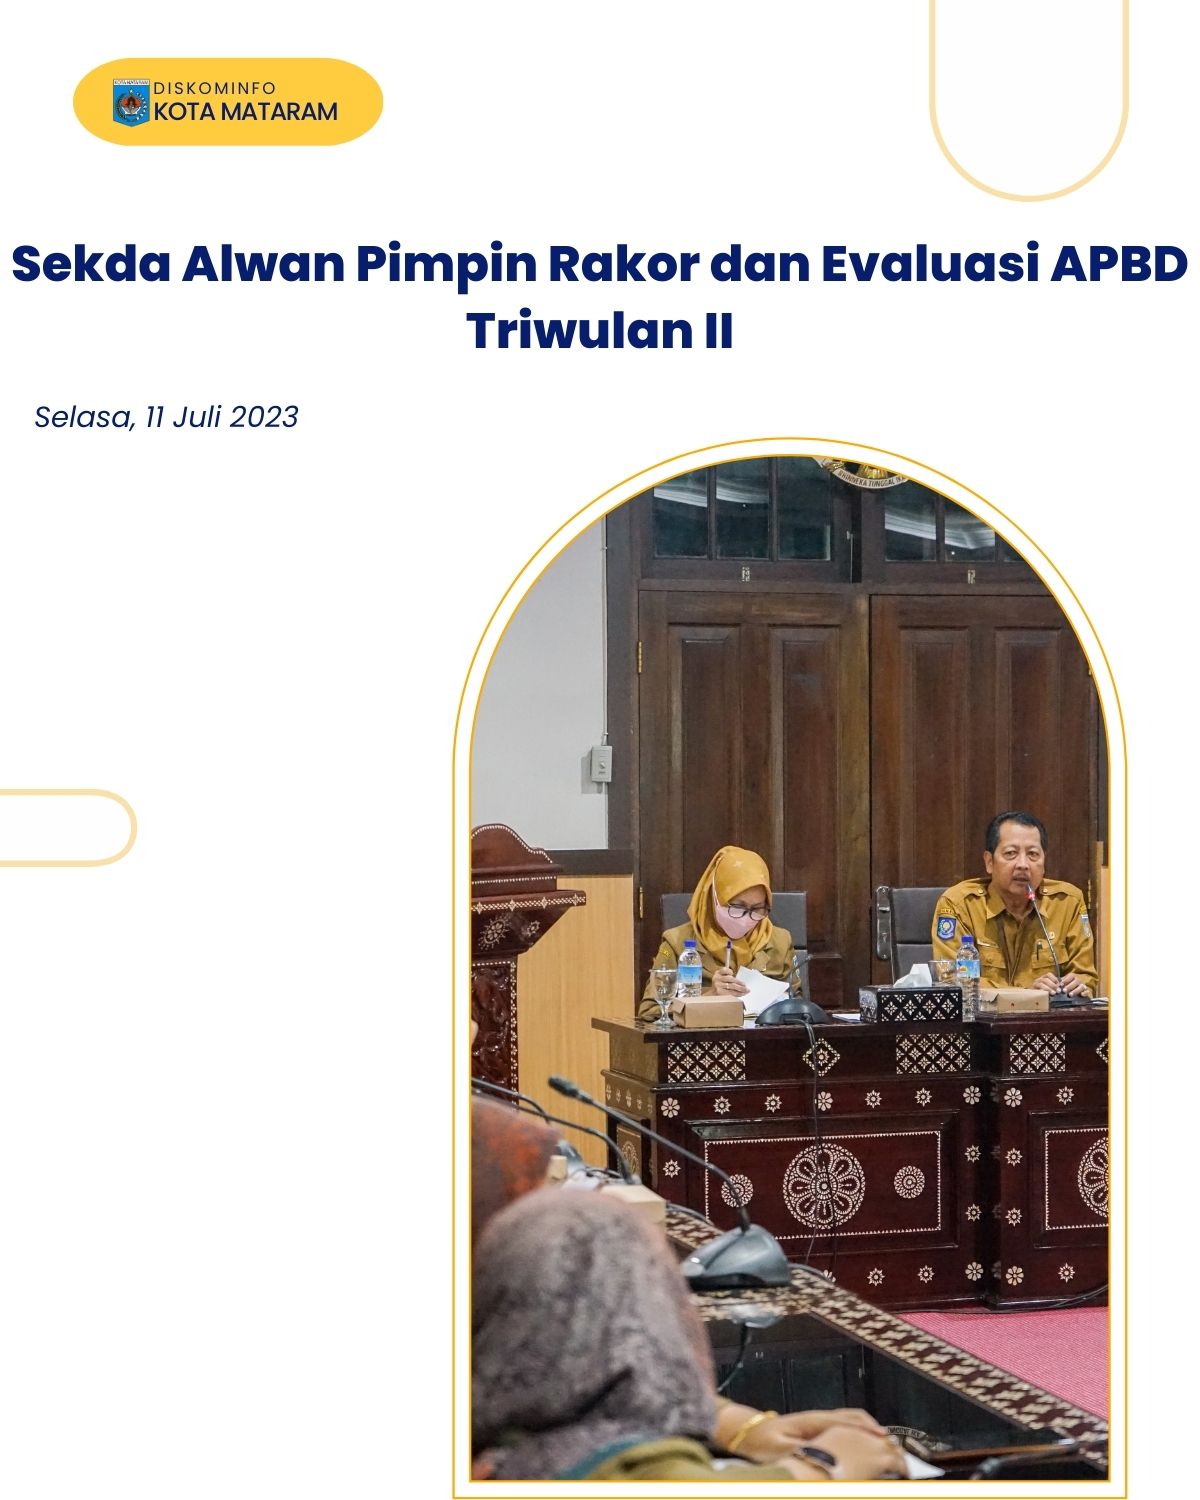 Sekda Alwan Pimpin Rakor dan Evaluasi APBD Triwulan II